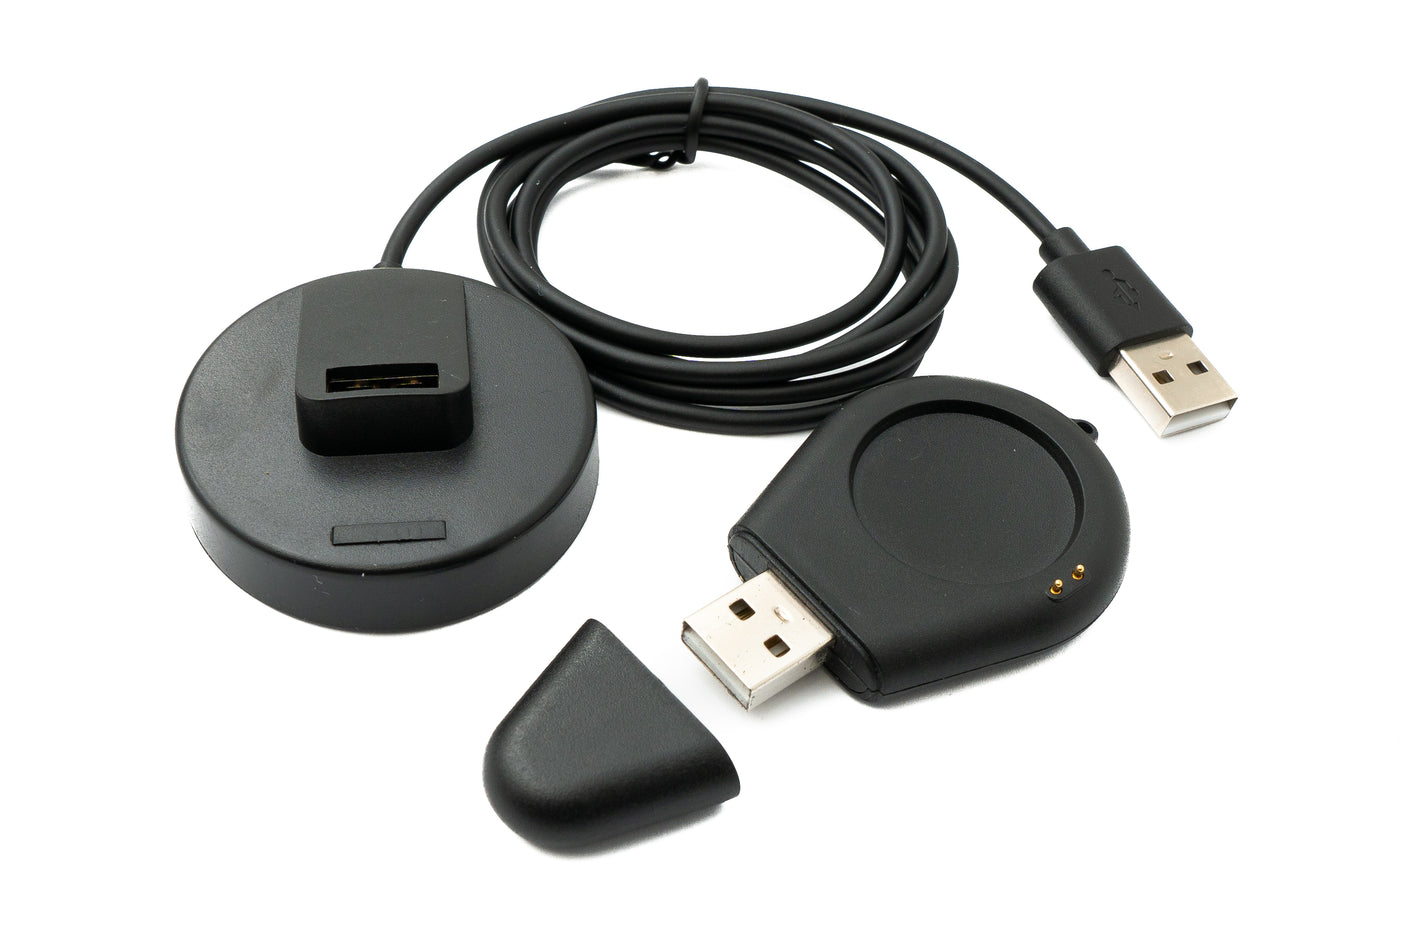 SYSTEM-S USB 2.0 Kabel 100 cm Ladestation für Xiaomi S1 Pro Watch abnehmbar Adapter in Schwarz